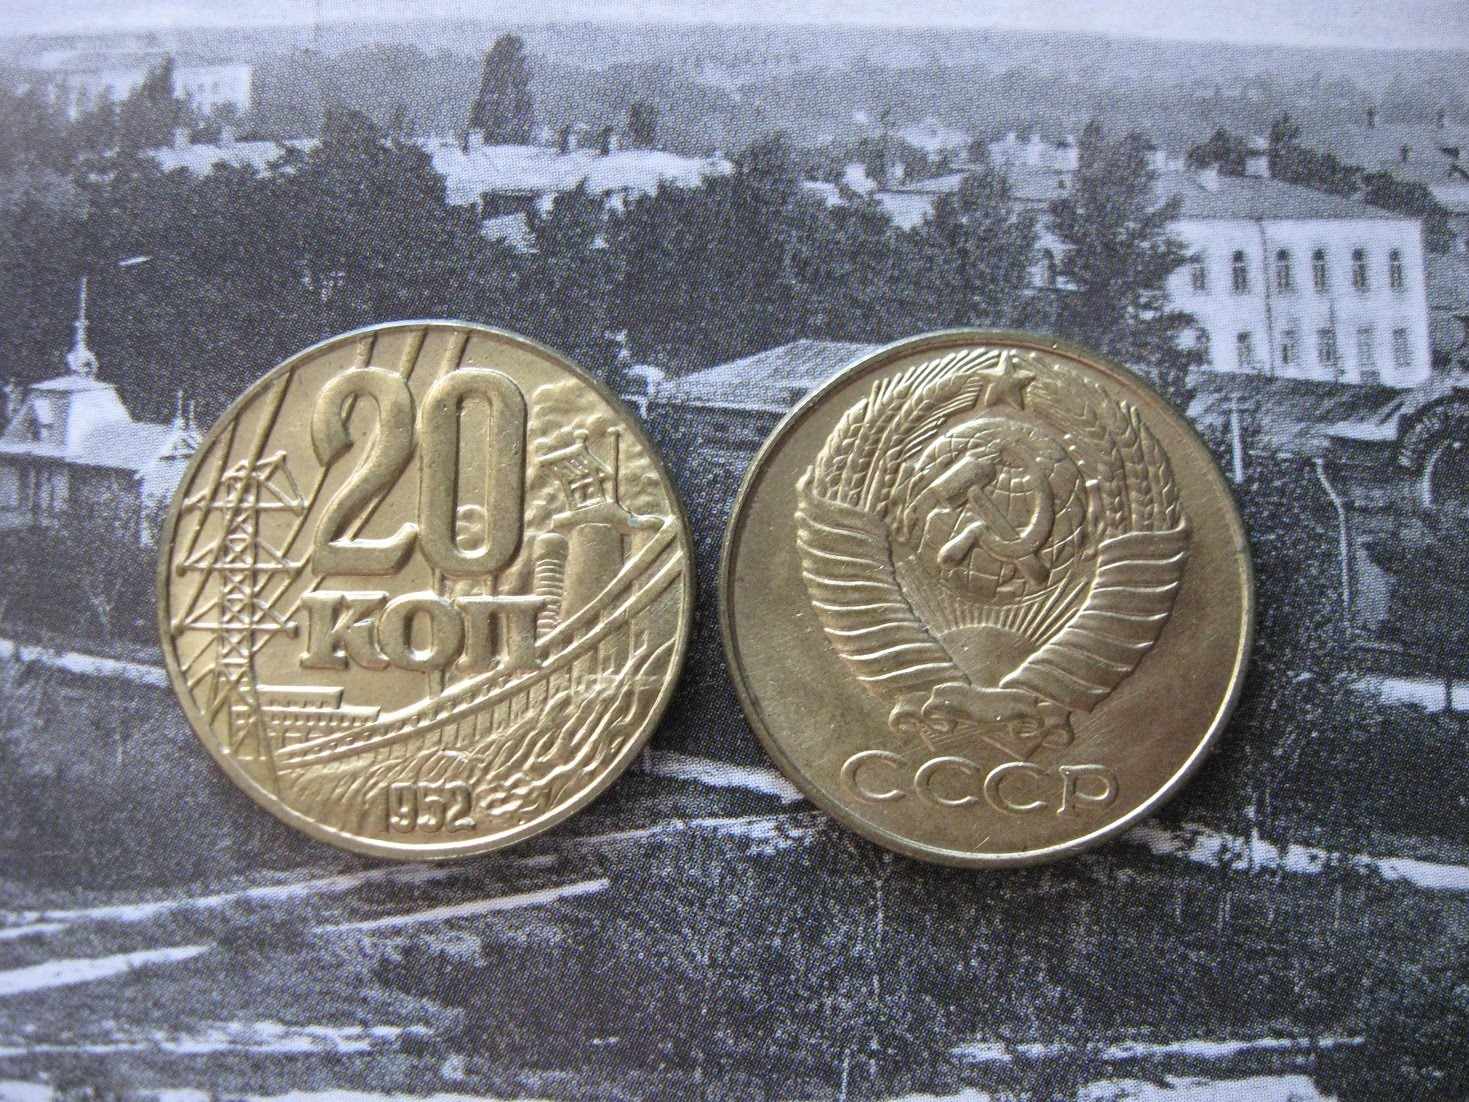 Ценные монеты СССР